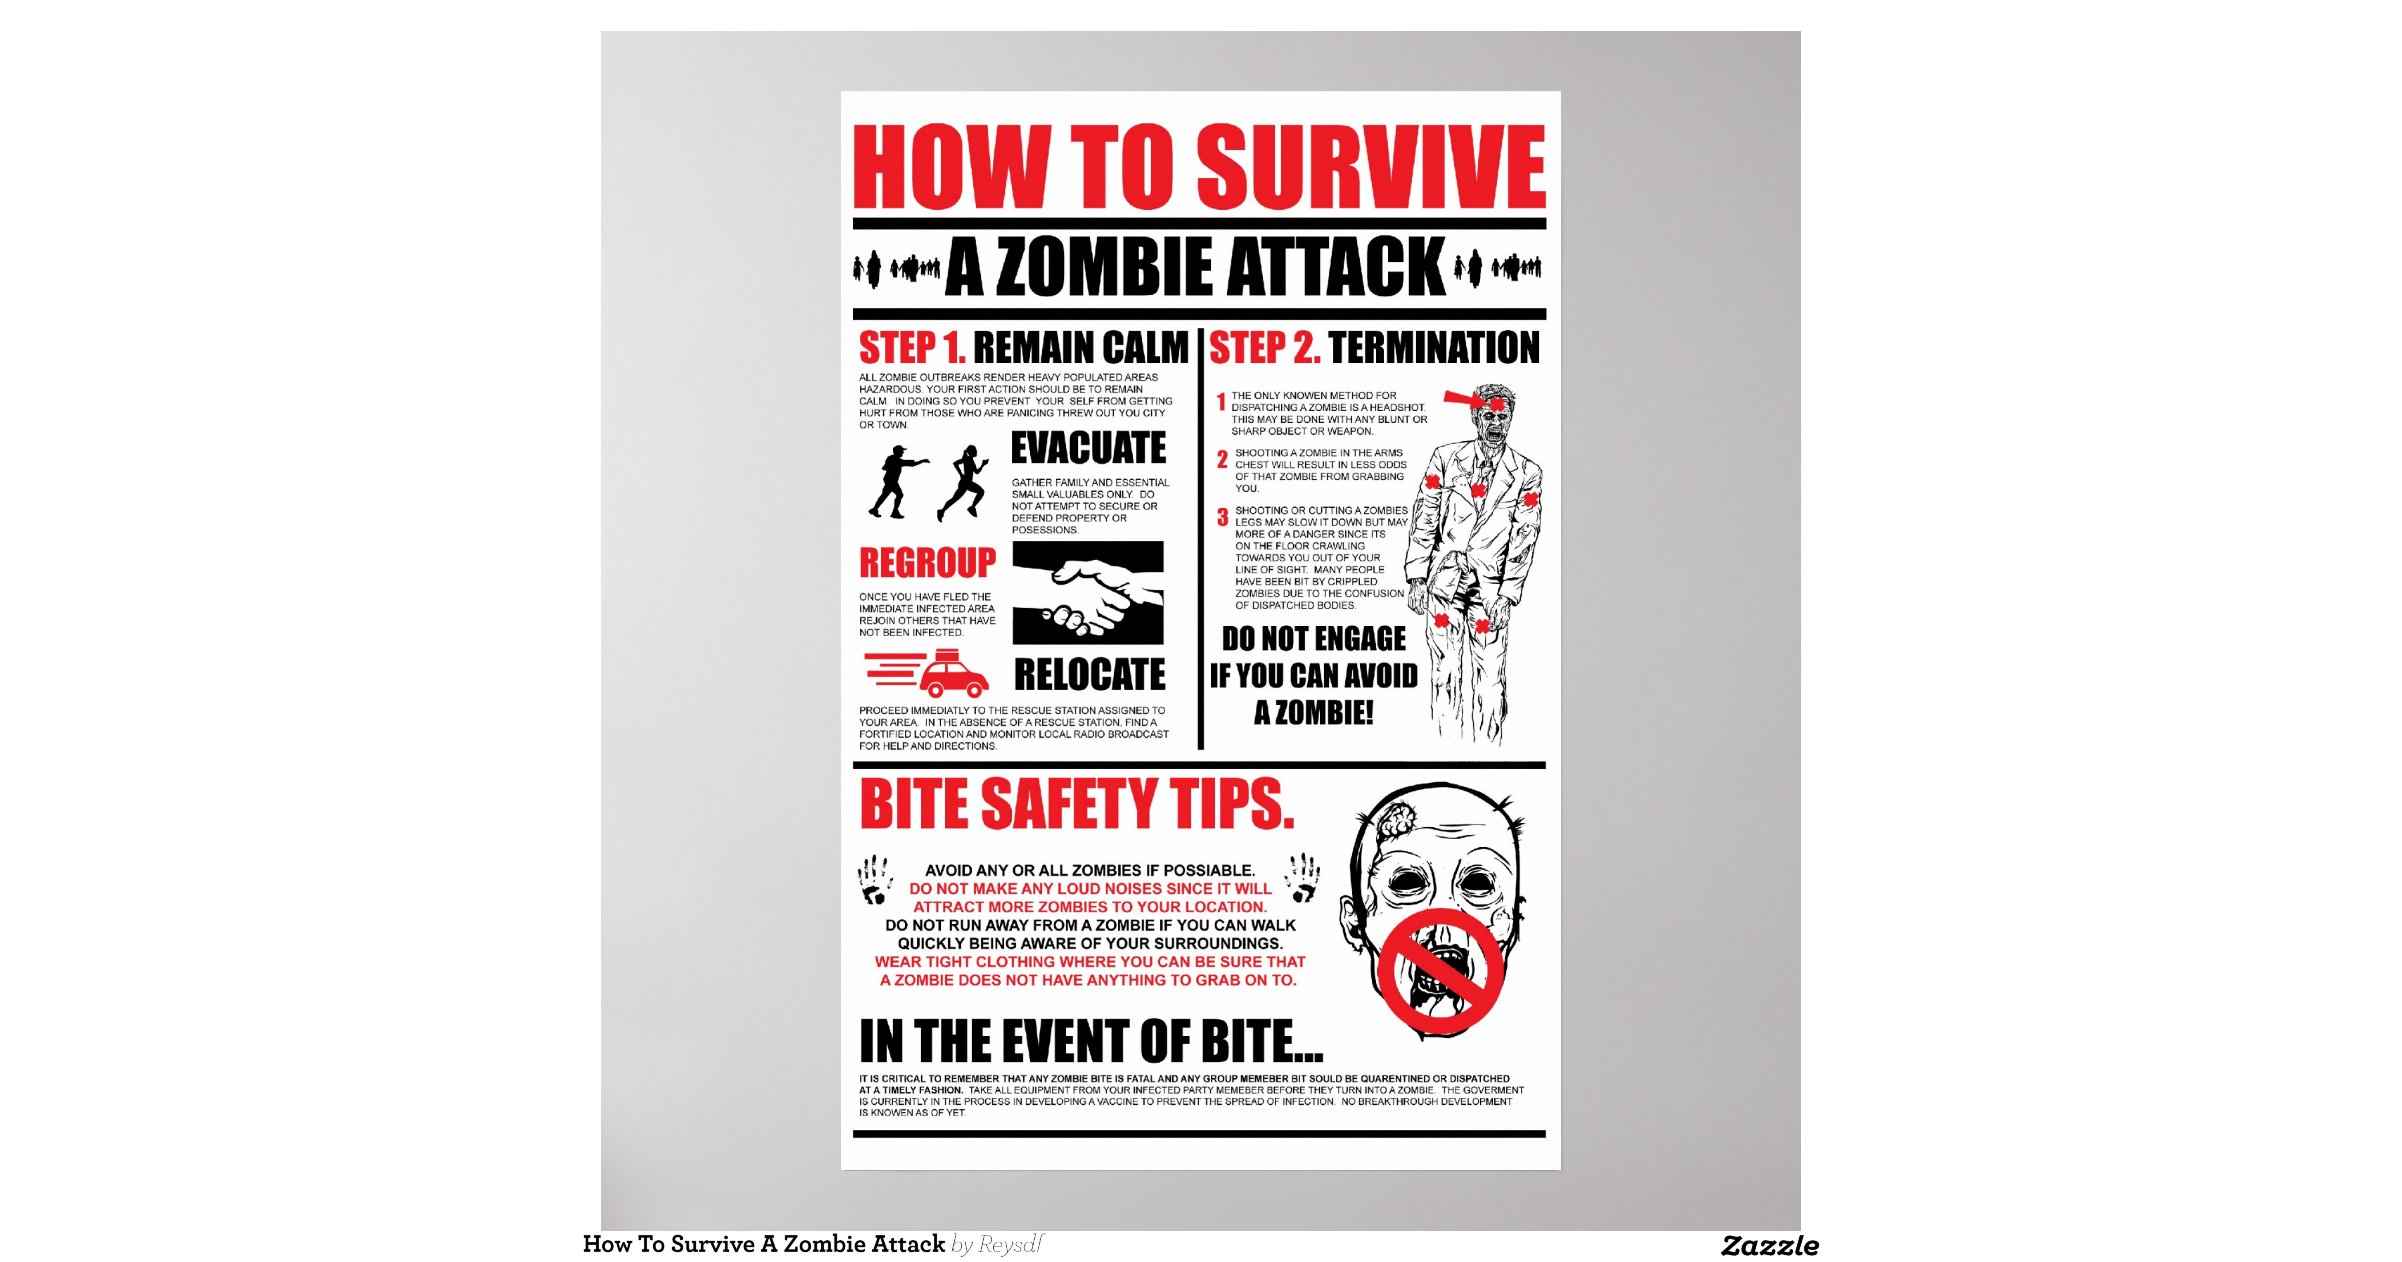 how-to-survive-a-zombie-attack-poster-rdd47e60fa15743cb9088290b2f32fb9f